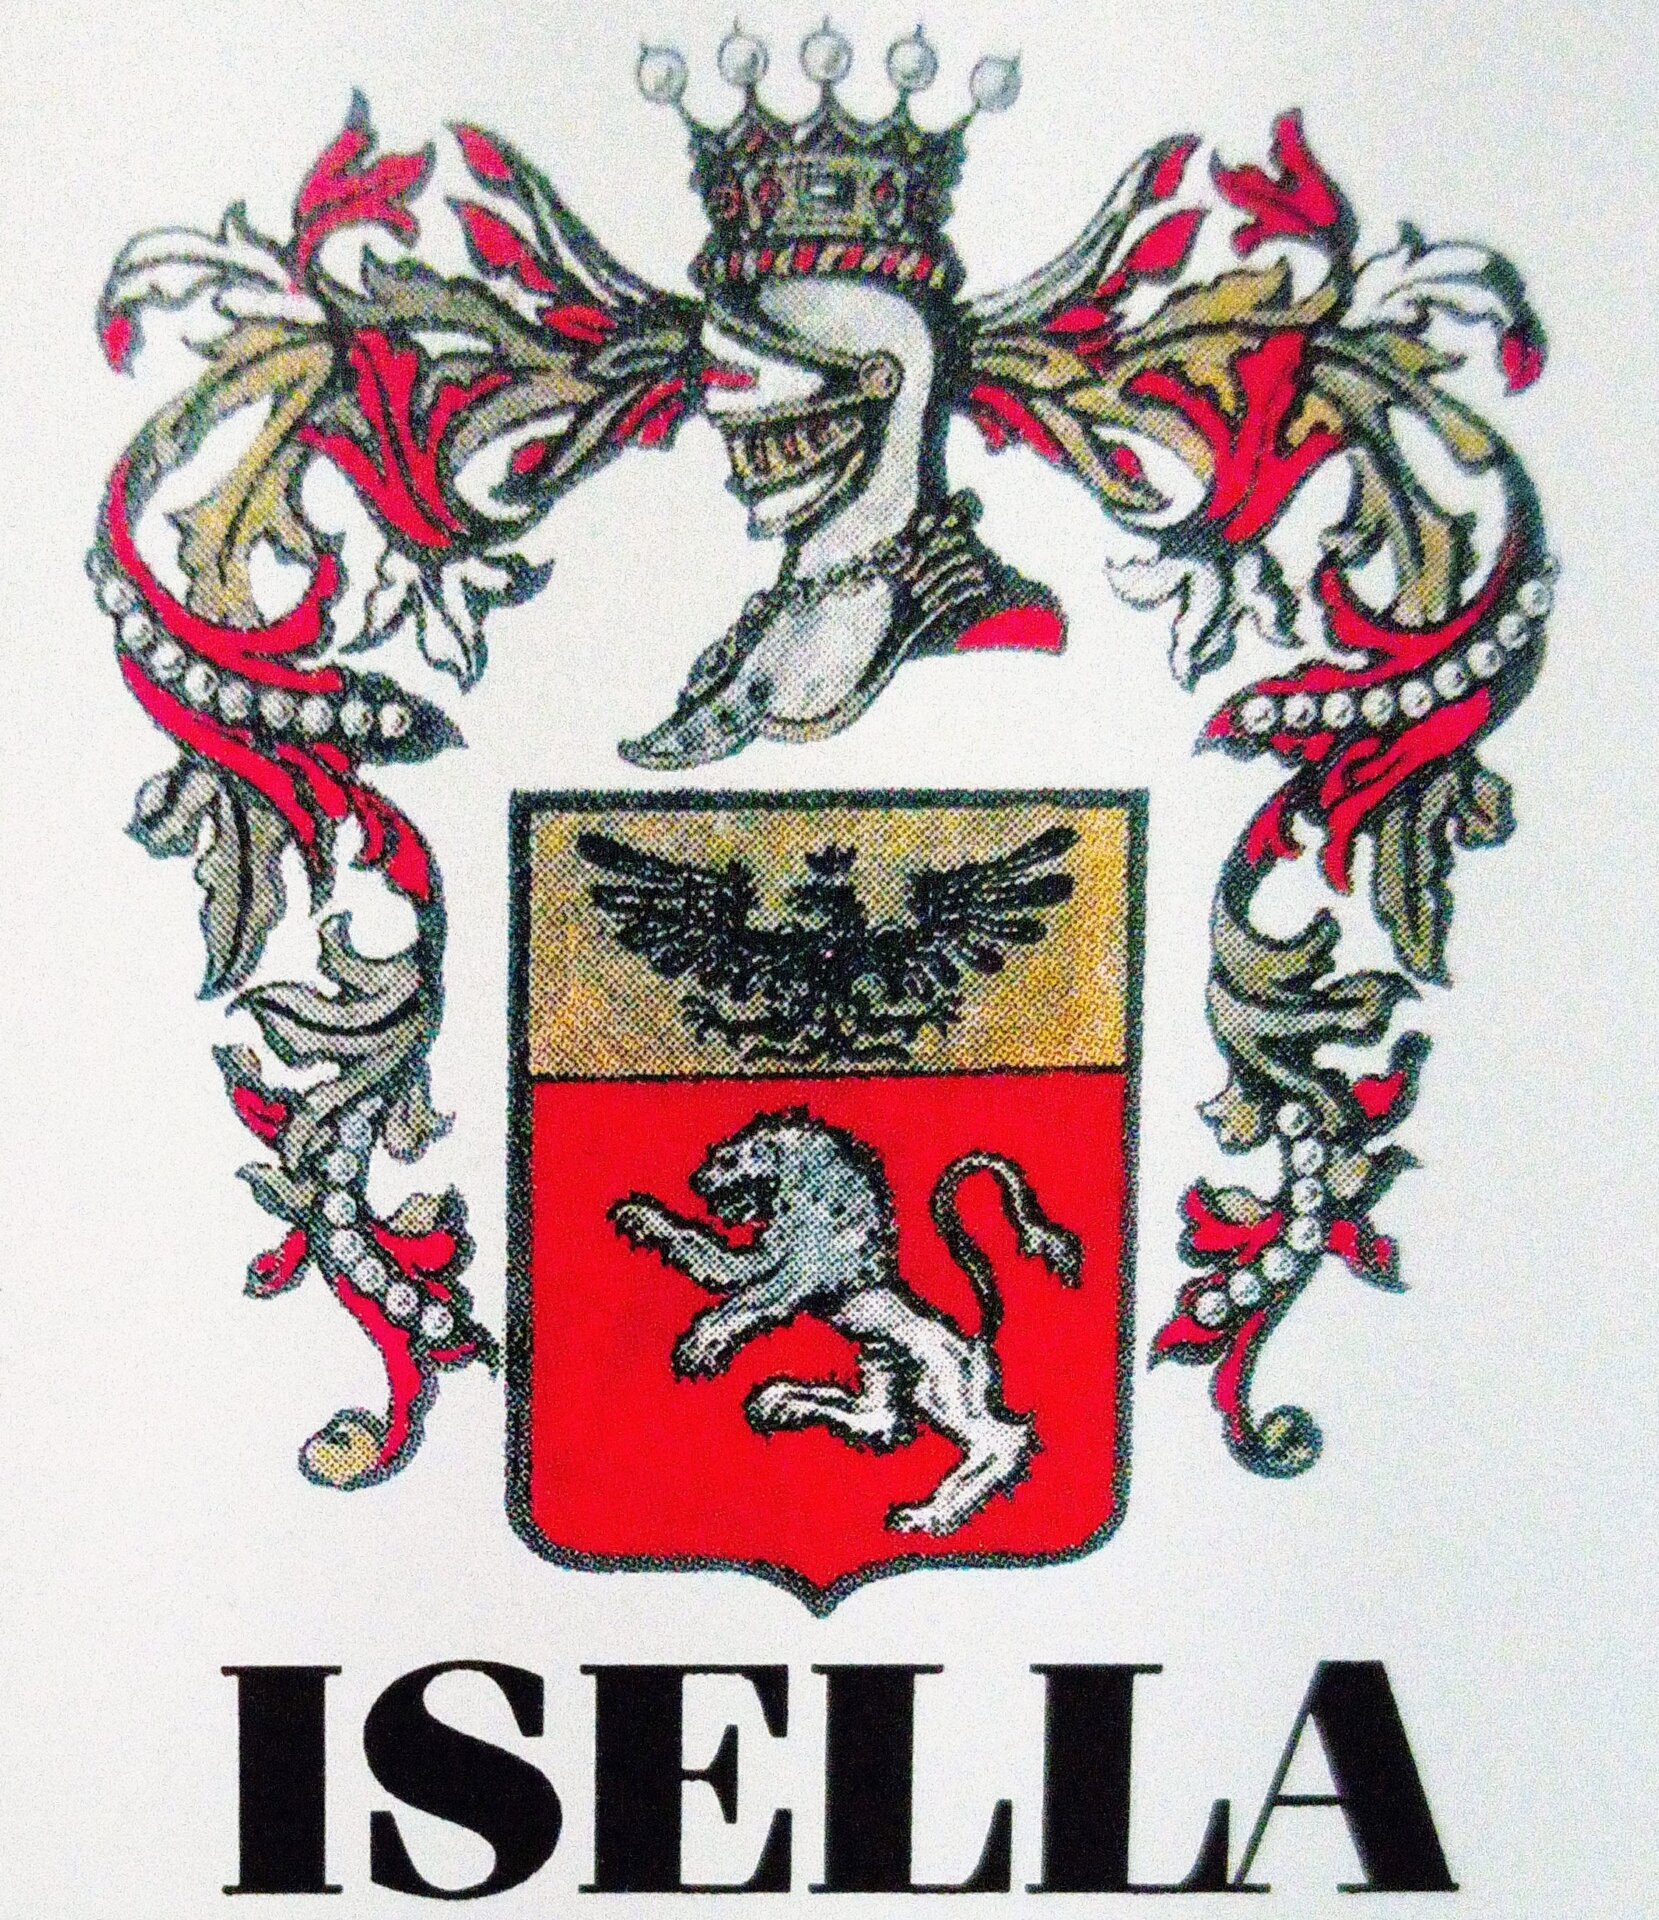 Il simbolo araldico della famiglia Isella Lodigiani